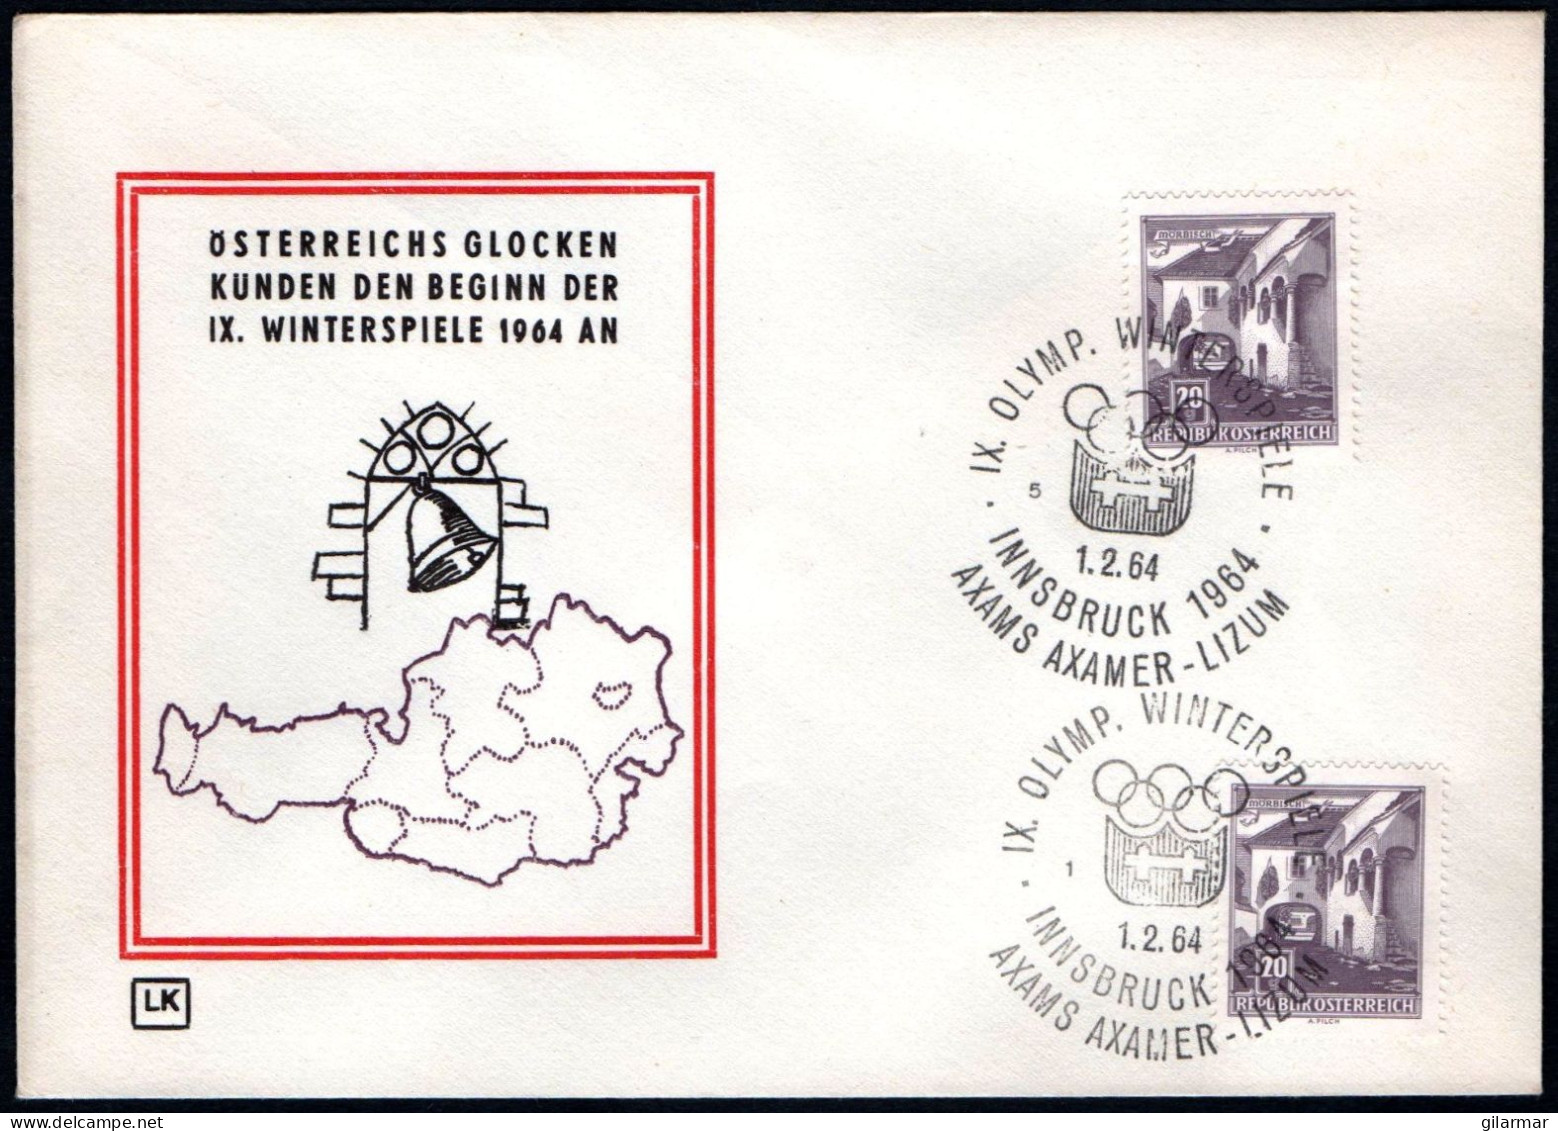 AUSTRIA AXAMS AXAMER - LIZUM 1964 - IX OLYMPIC WINTER GAMES - INNSBRUCK '64 - CANCELS # 1 & 5 - G - Hiver 1964: Innsbruck